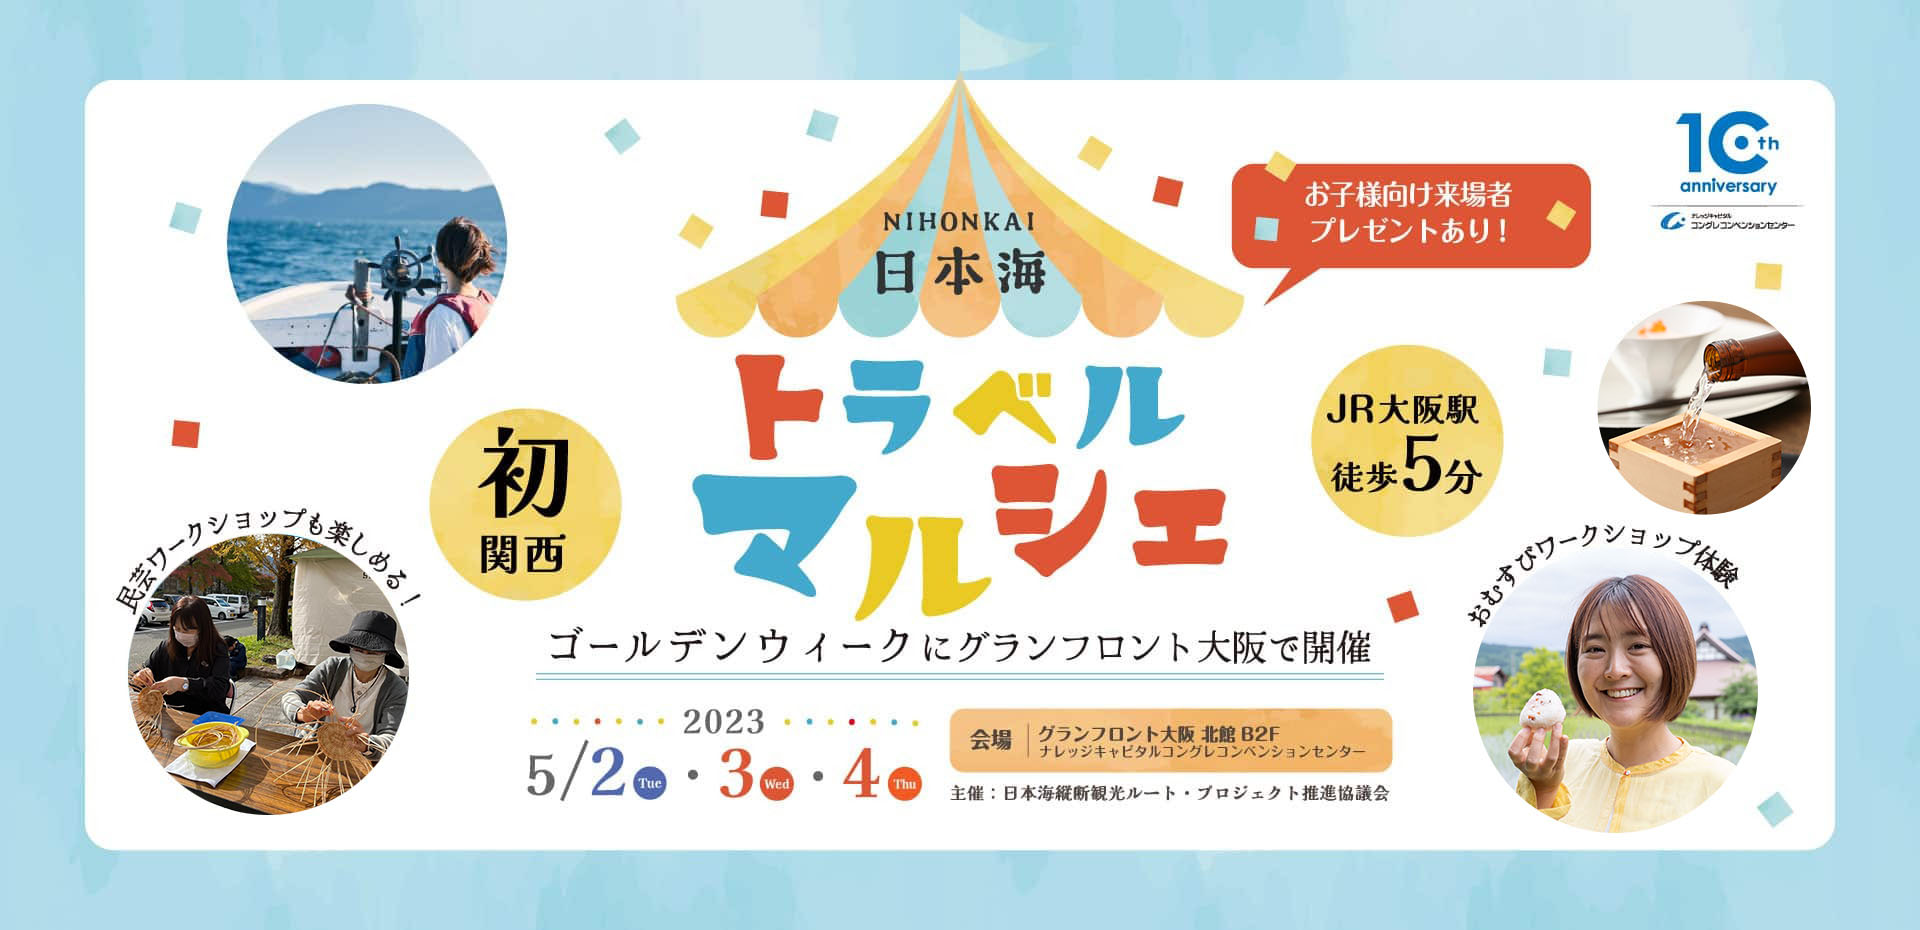 WILLER：～GWに大阪で開催する日本最大級の日本海イベント『日本海トラベルマルシェ』にWILLERが出展～ 1回1,000円で高速バスの行き先は運まかせな「WILLERガチャ」、京都丹後鉄道のレアな古物オークション、 旅行が当たるトラベルフェスタなどを実施！